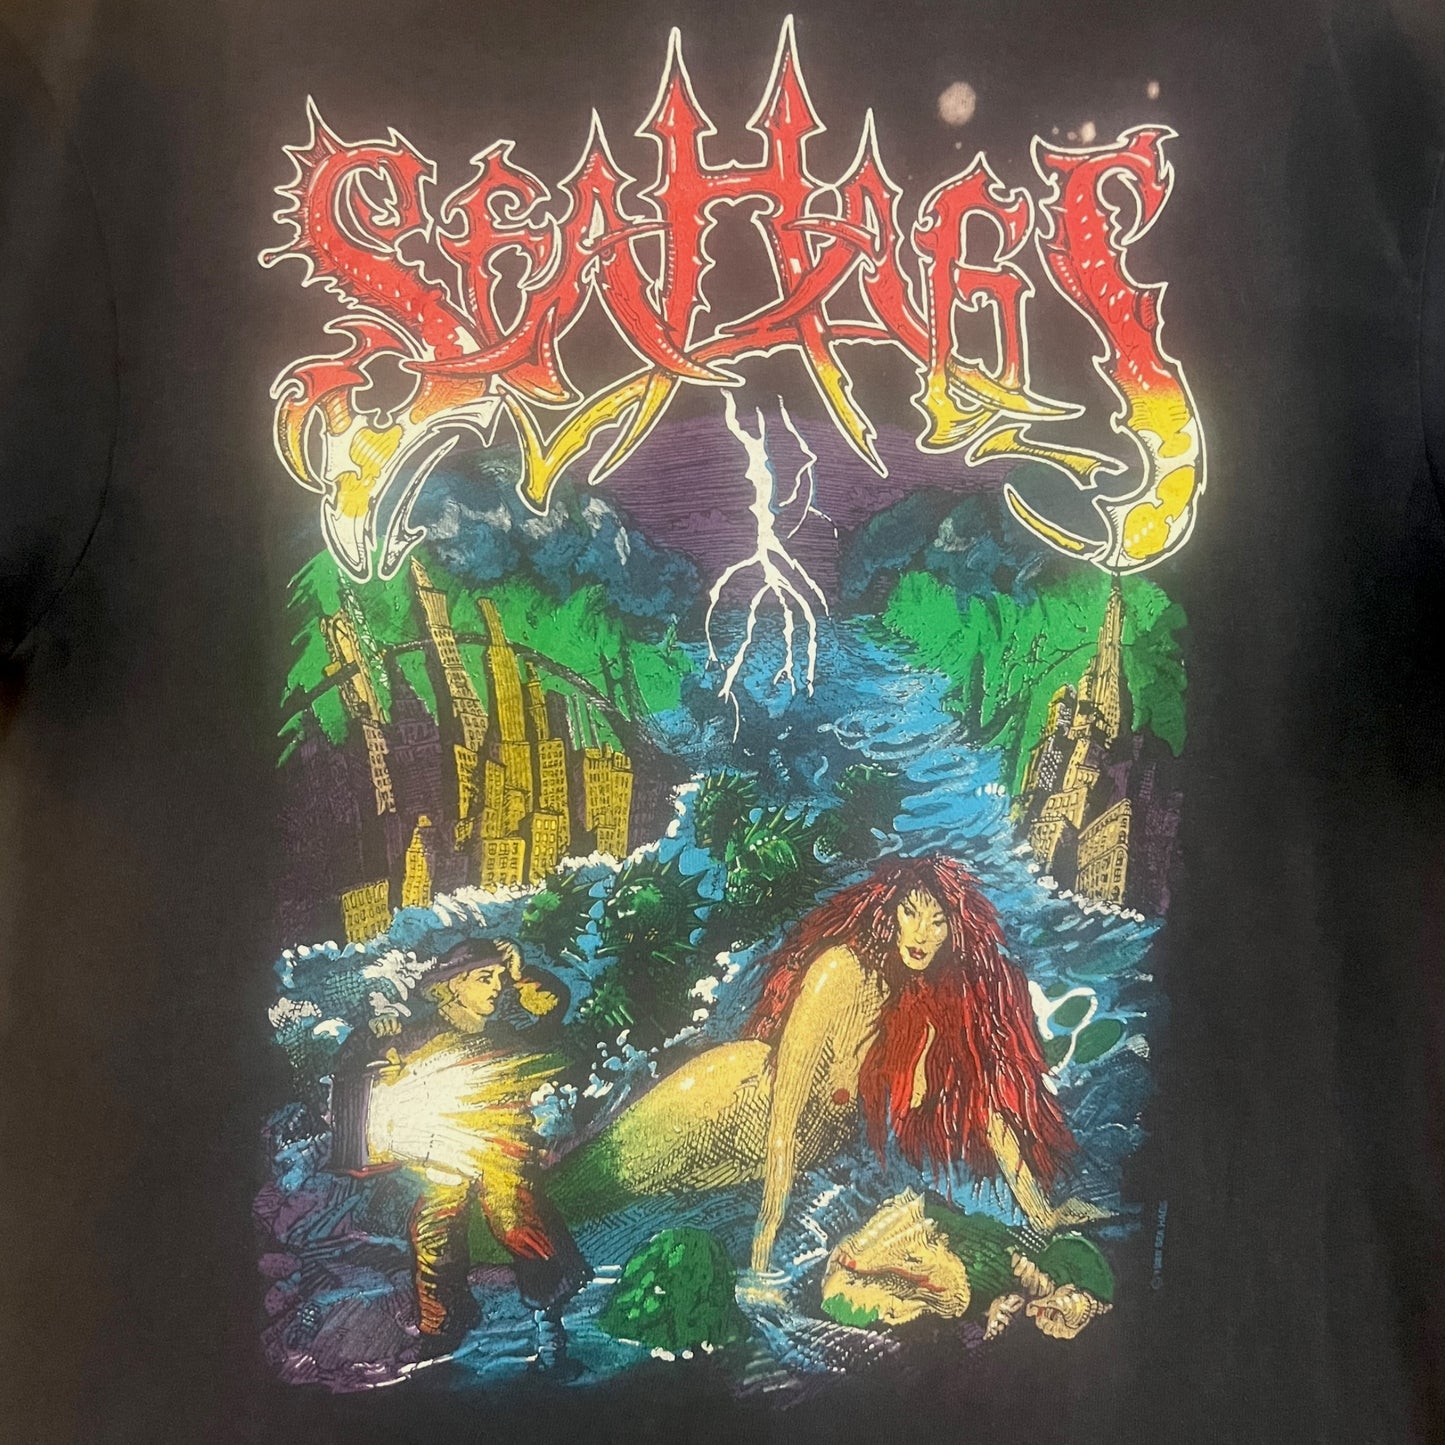 Sea Hags Band 1989 Tour Vintage T-Shirt Size L